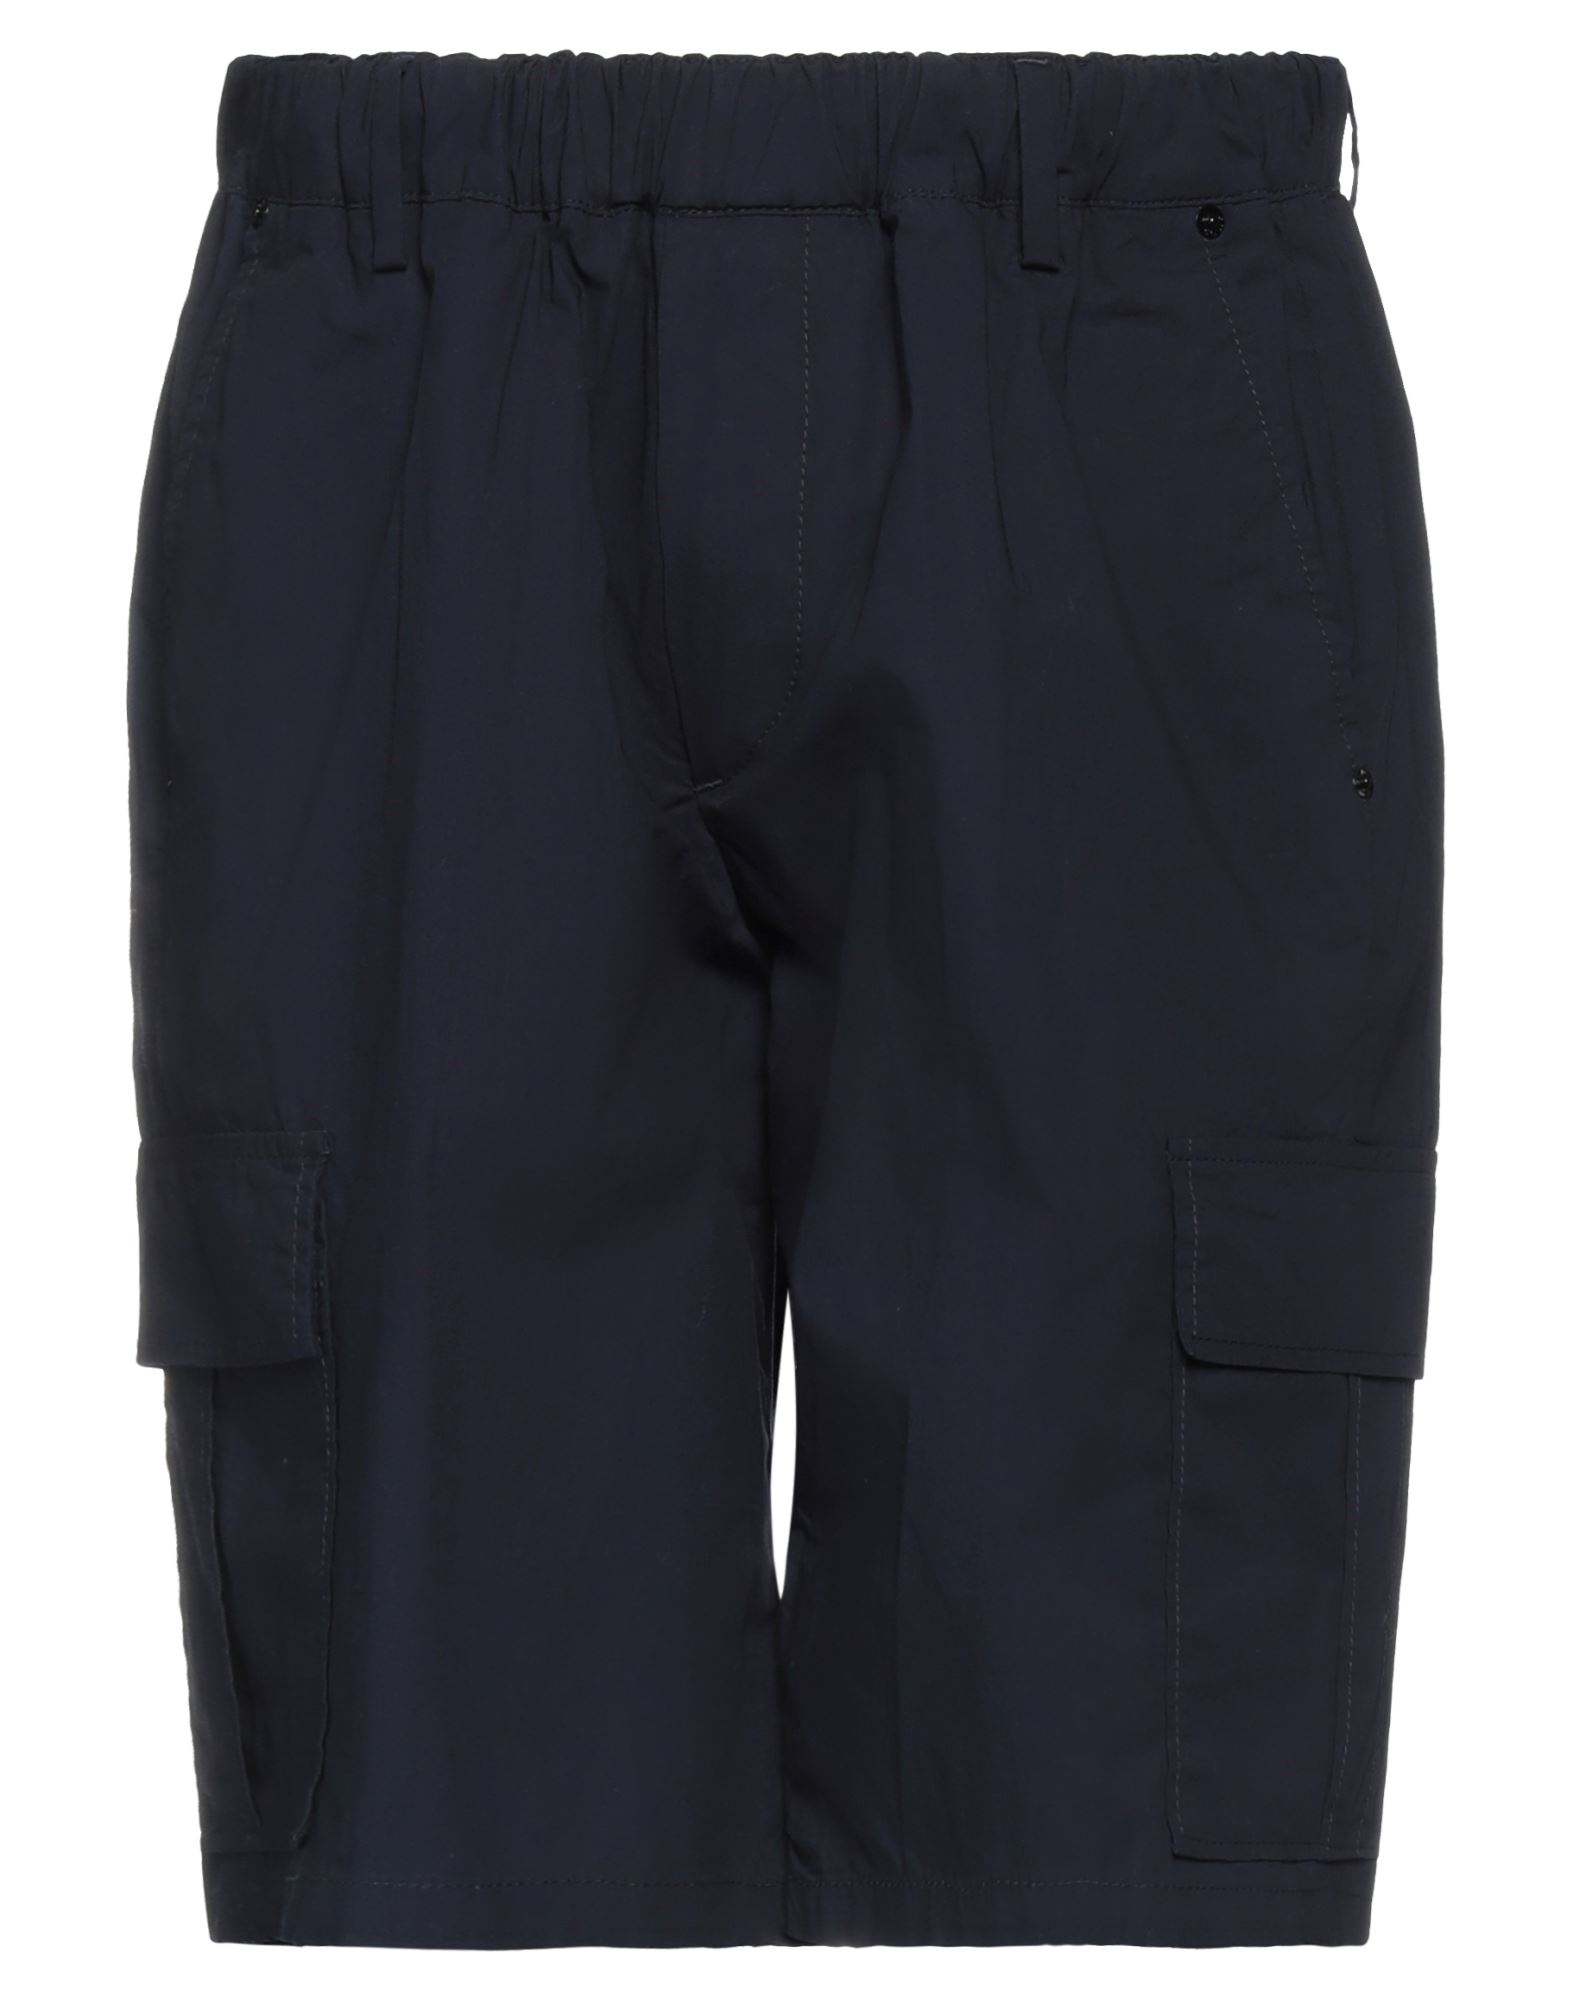 Pmds Premium Mood Denim Superior Man Shorts & Bermuda Shorts Midnight Blue Size 30 Cotton, Elastane